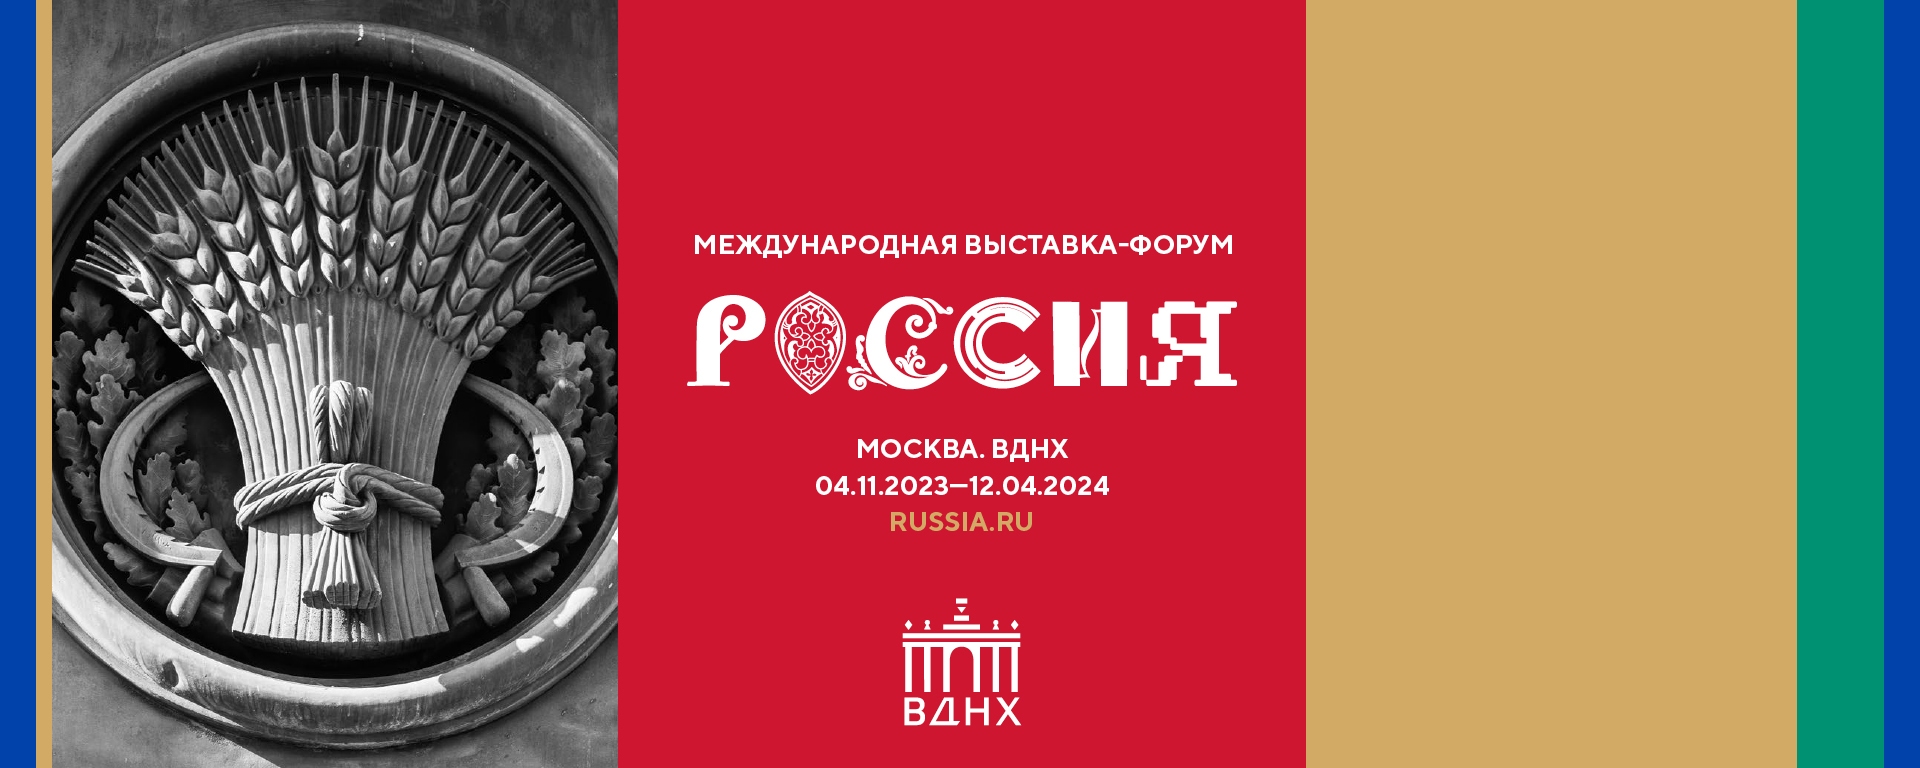 Жители Костромской области могут принять участие в создании логотипа Международной выставки «Россия» для своего региона